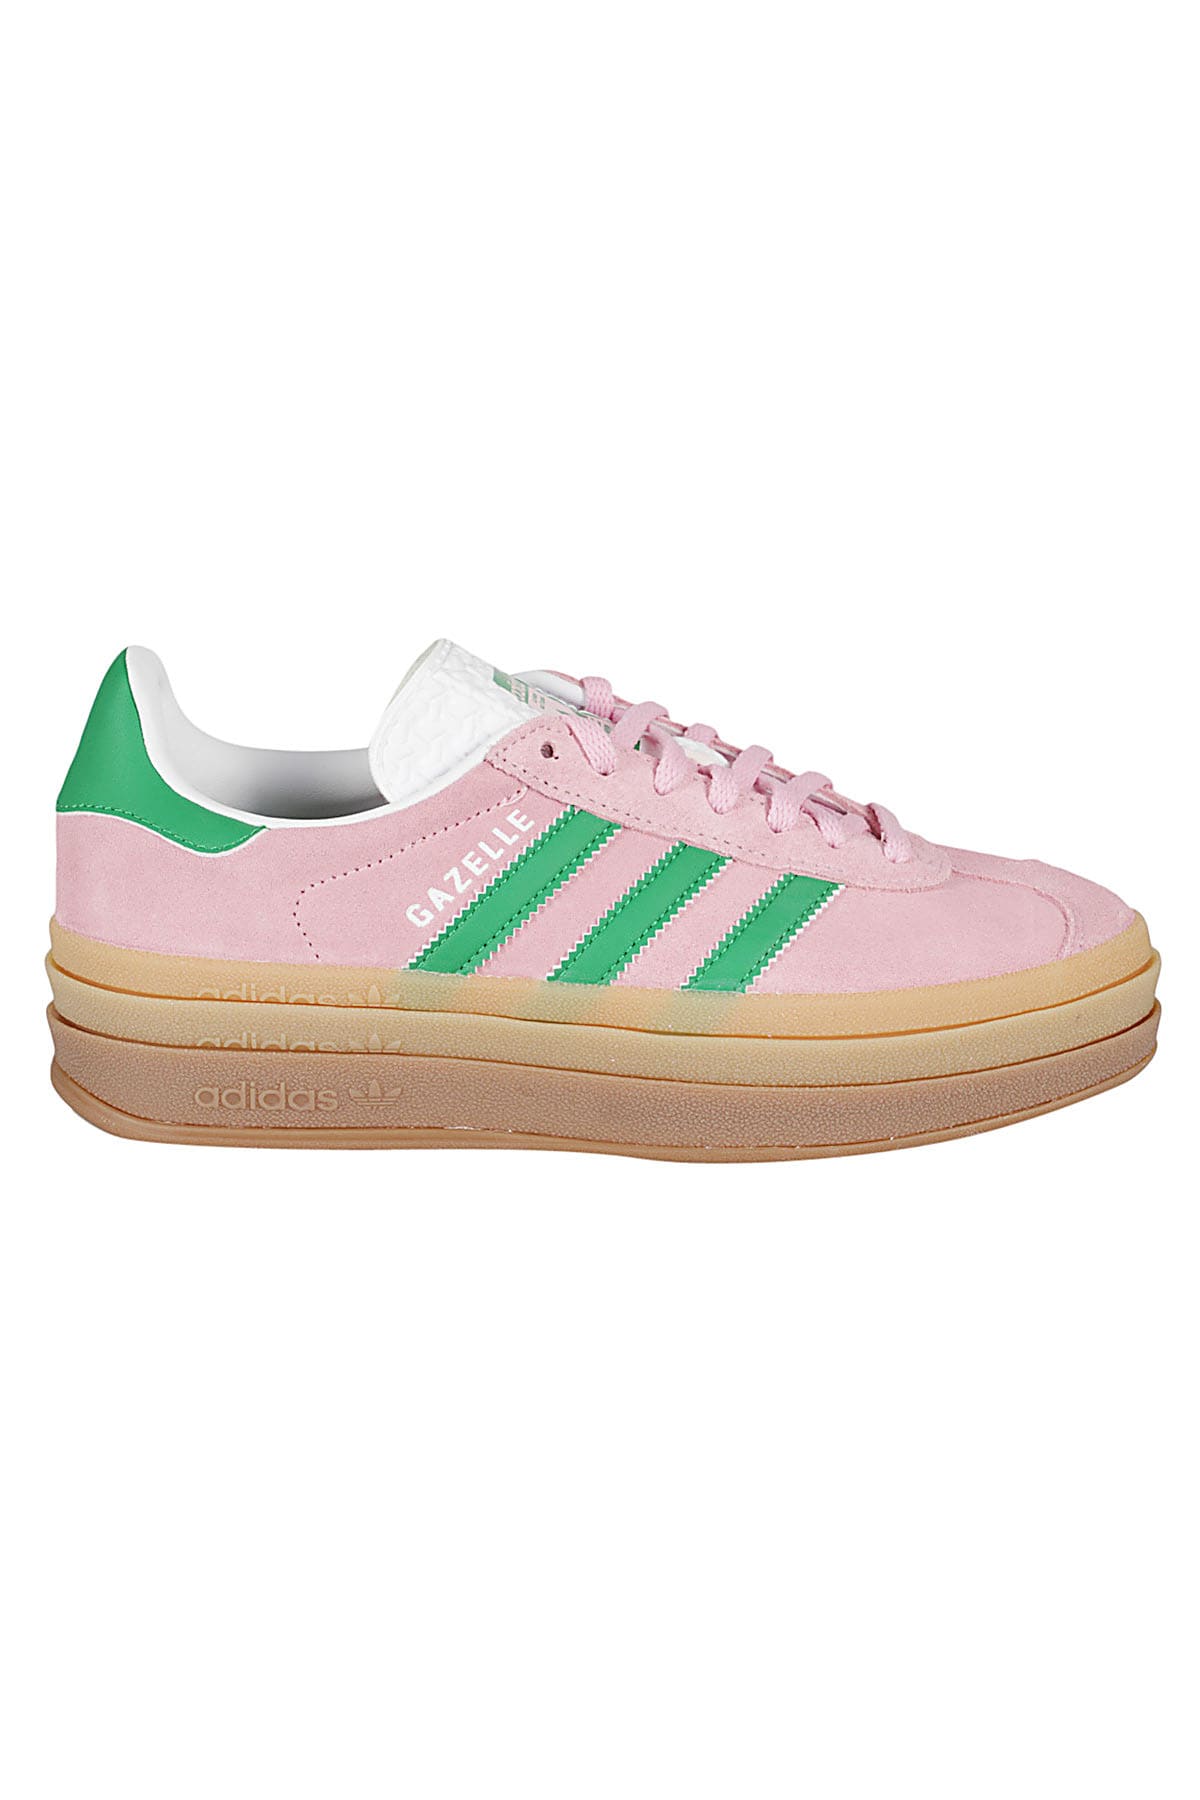 Adidas Originals Gazelle Bold W In Pink